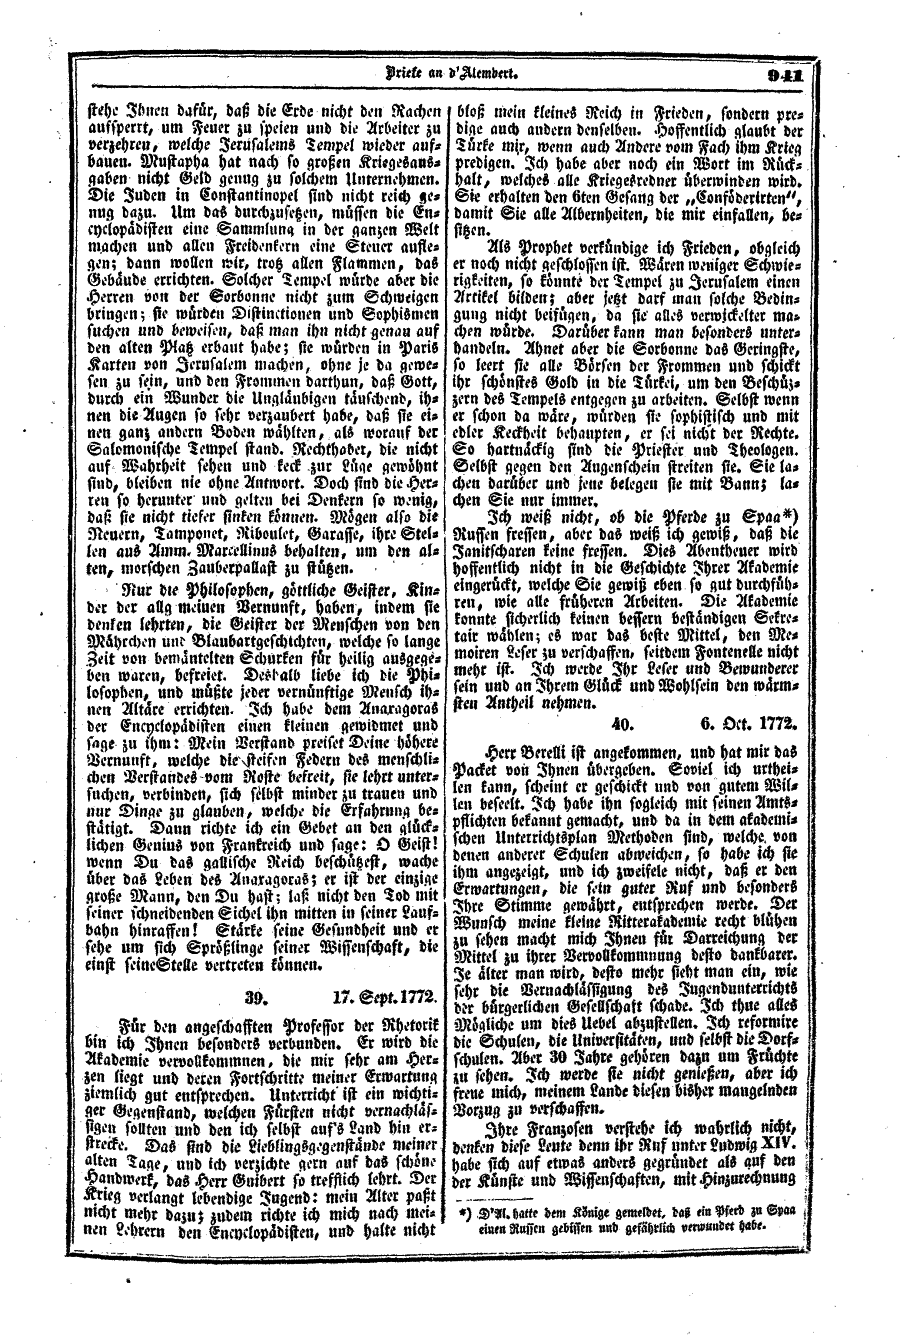 S. 941, Obj. 2